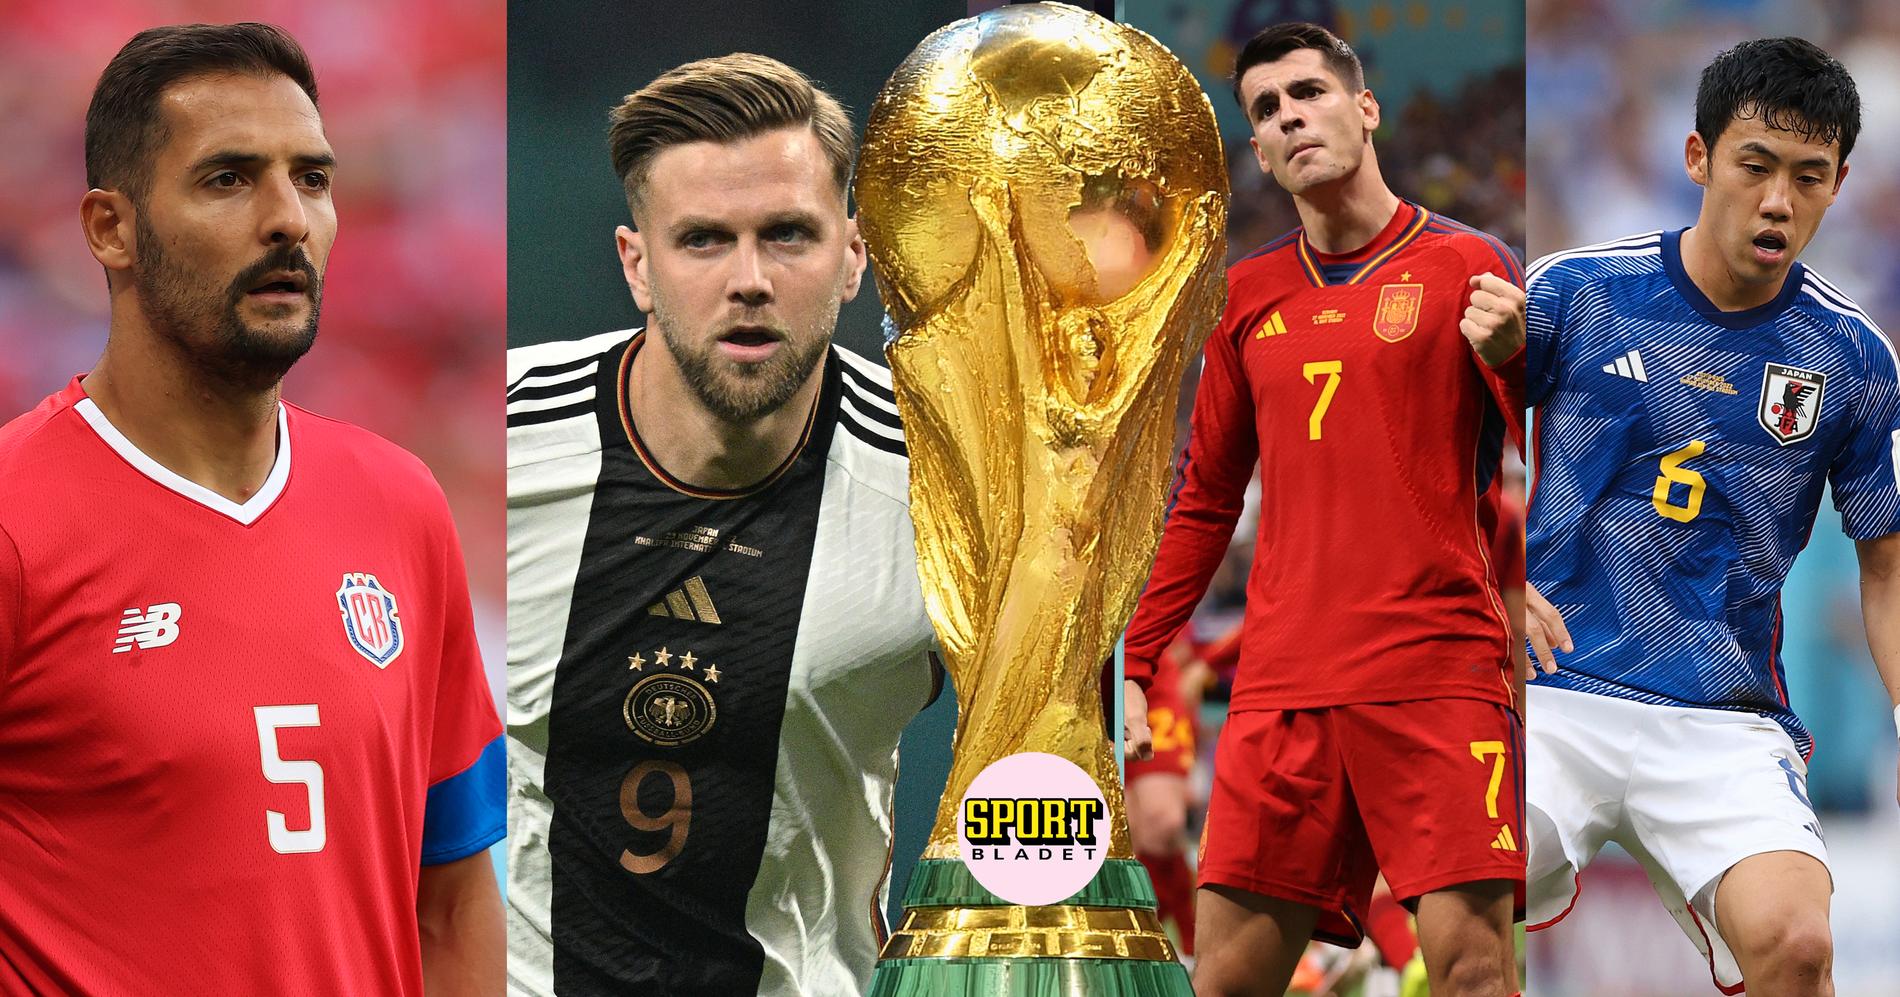 Costa Rica möter Tyskland och Spanien möter Japan i sista omgången i grupp E i fotbolls-VM.